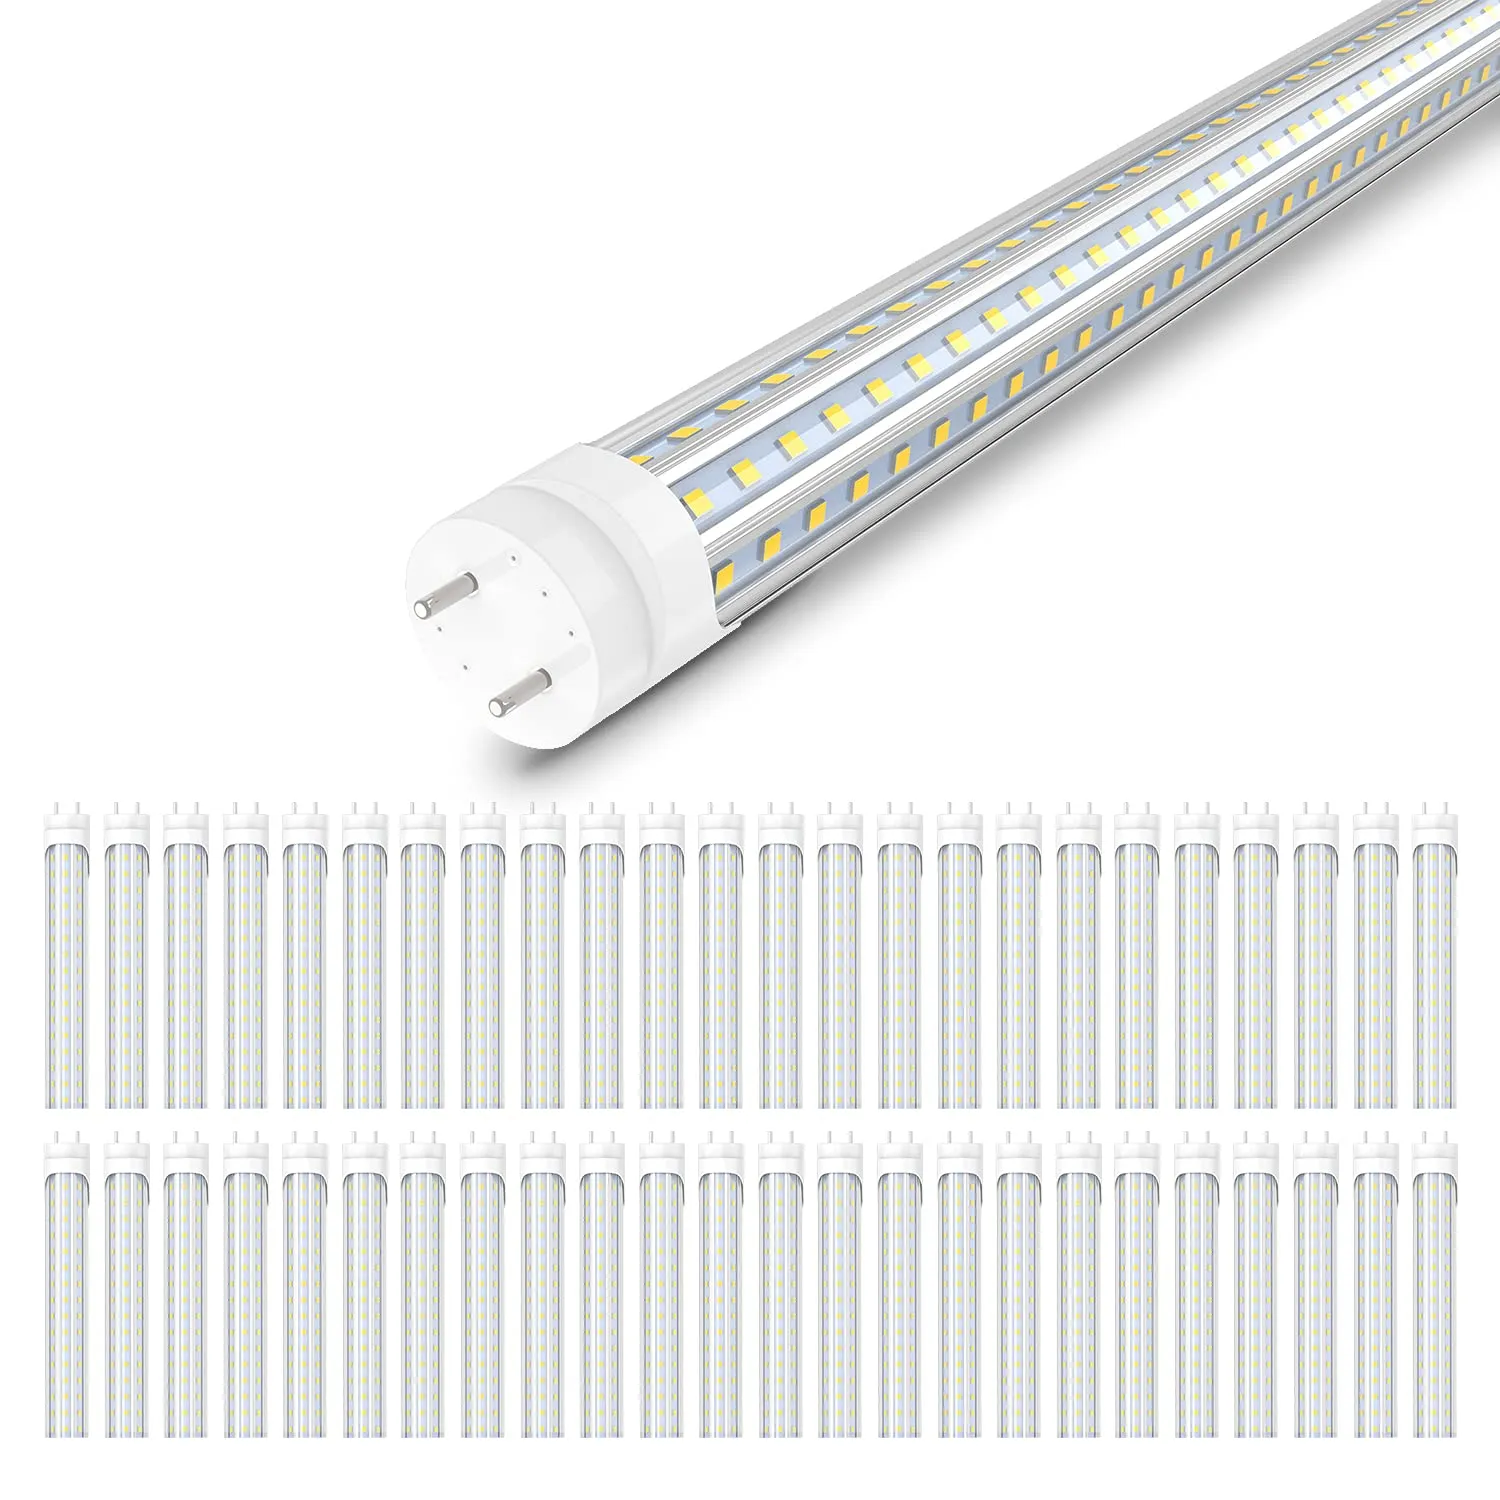 Bulbs LED T8 a gesso 4 piedi 72W 6000K luci a tubo bianco freddo 4 piedi Bypass di sostituzione della lampadina fluorescente Bypass a doppia estremità